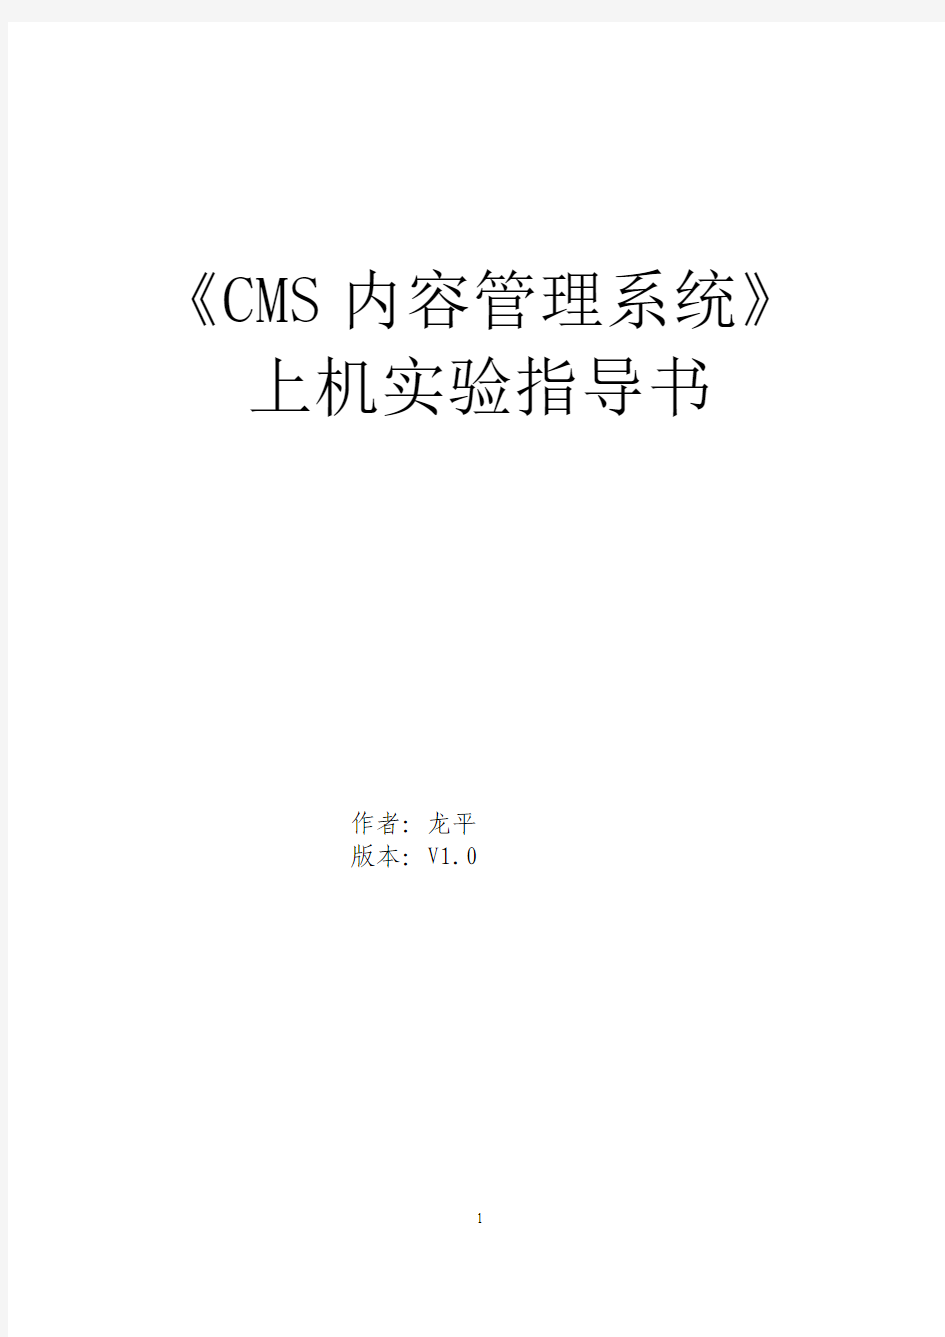 《科讯CMS内容管理系统》指导书